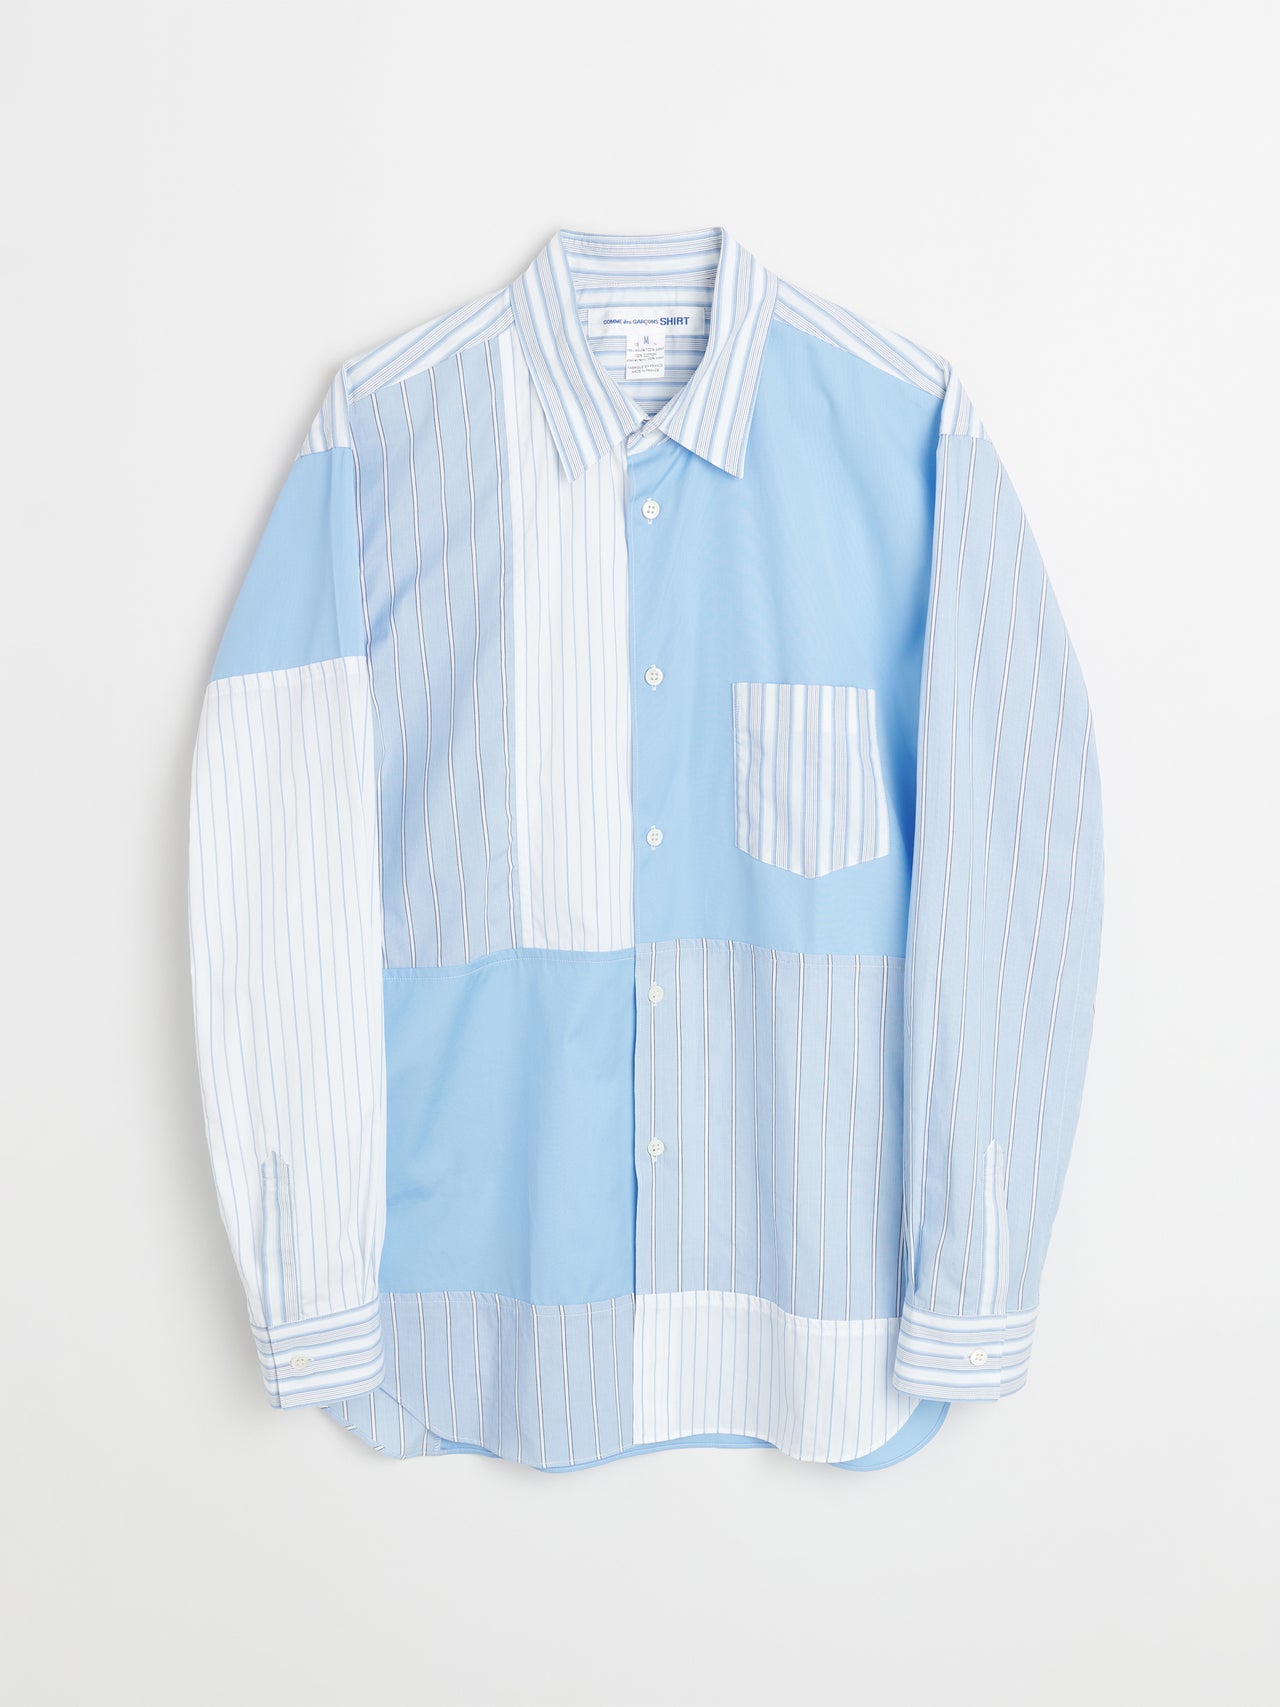 Comme des Garçons Shirt Shirt Stripe / Blue